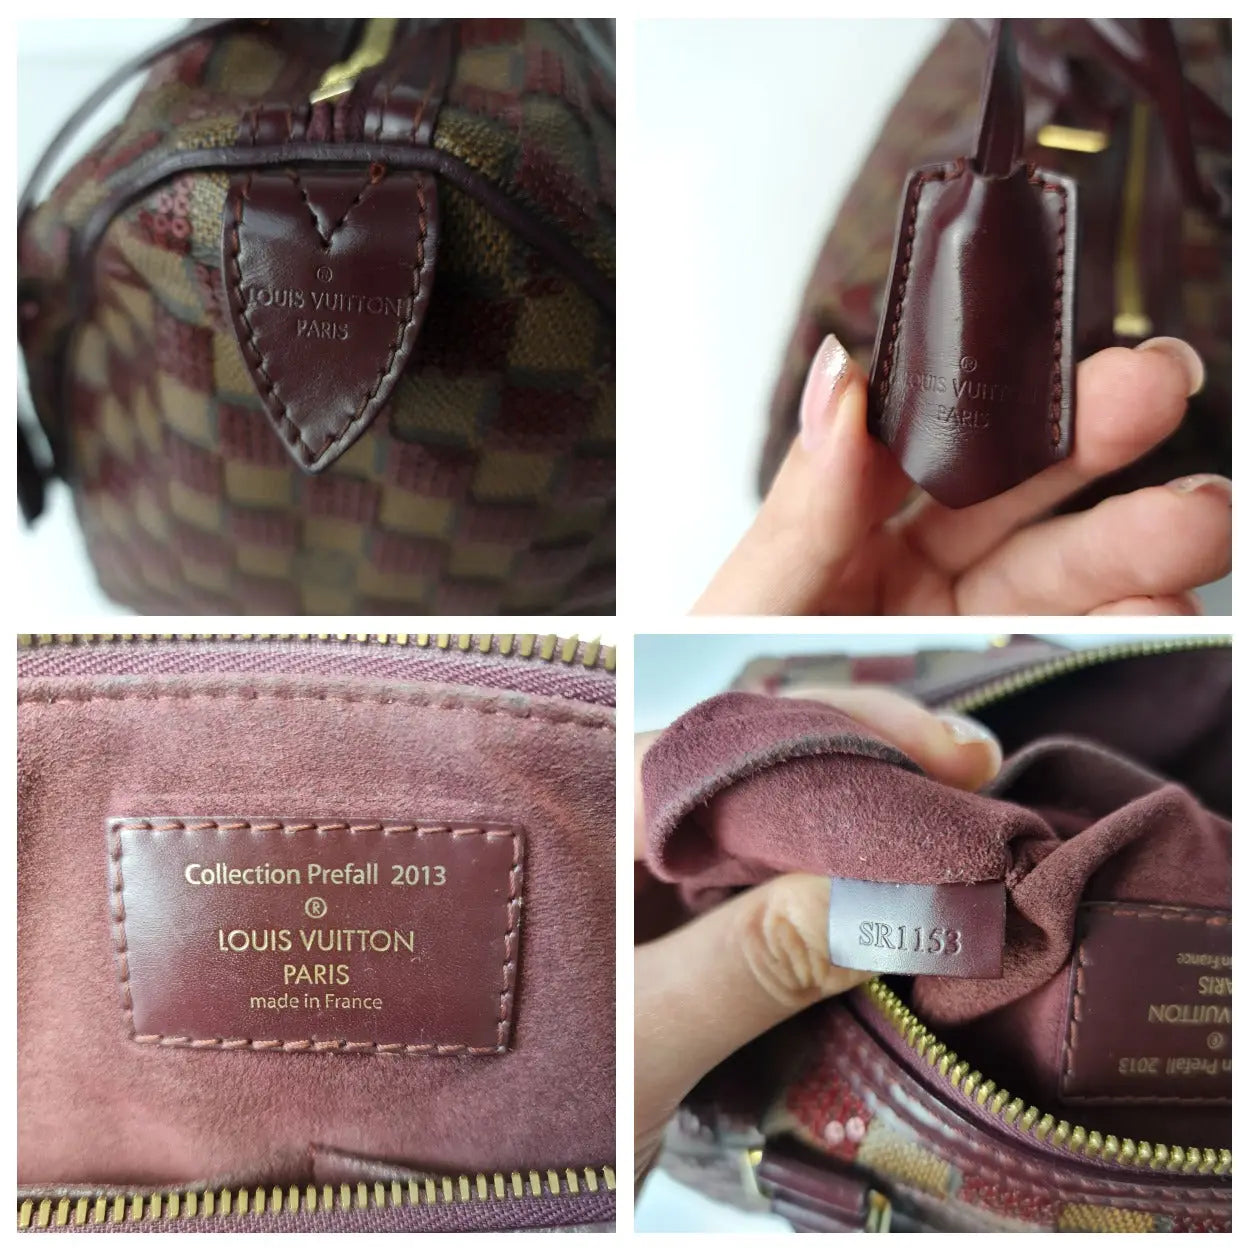 Louis Vuitton Speedy Damier Paillettes 30 Rouge Purple Shoulder Bag